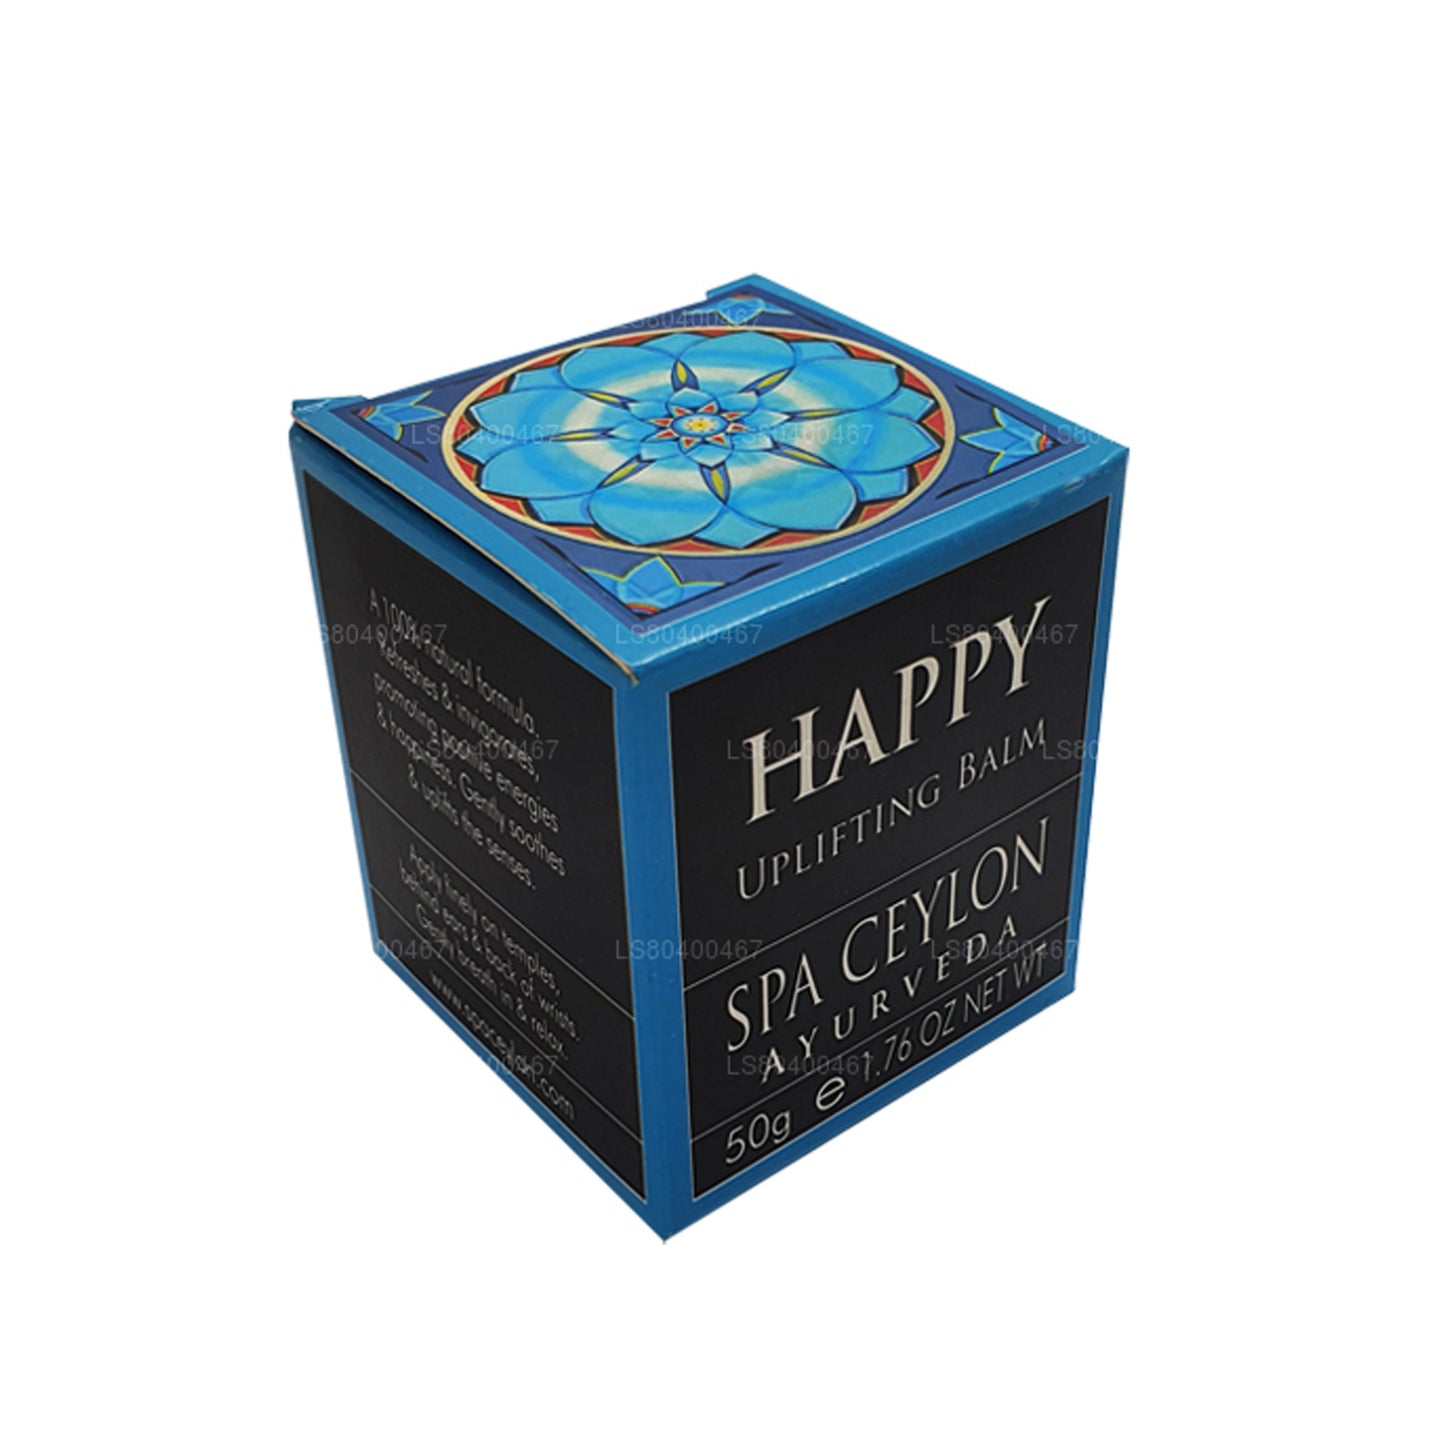 Спа-Цейлонский бальзам «Счастливый поднимающий настроение» (50 г)